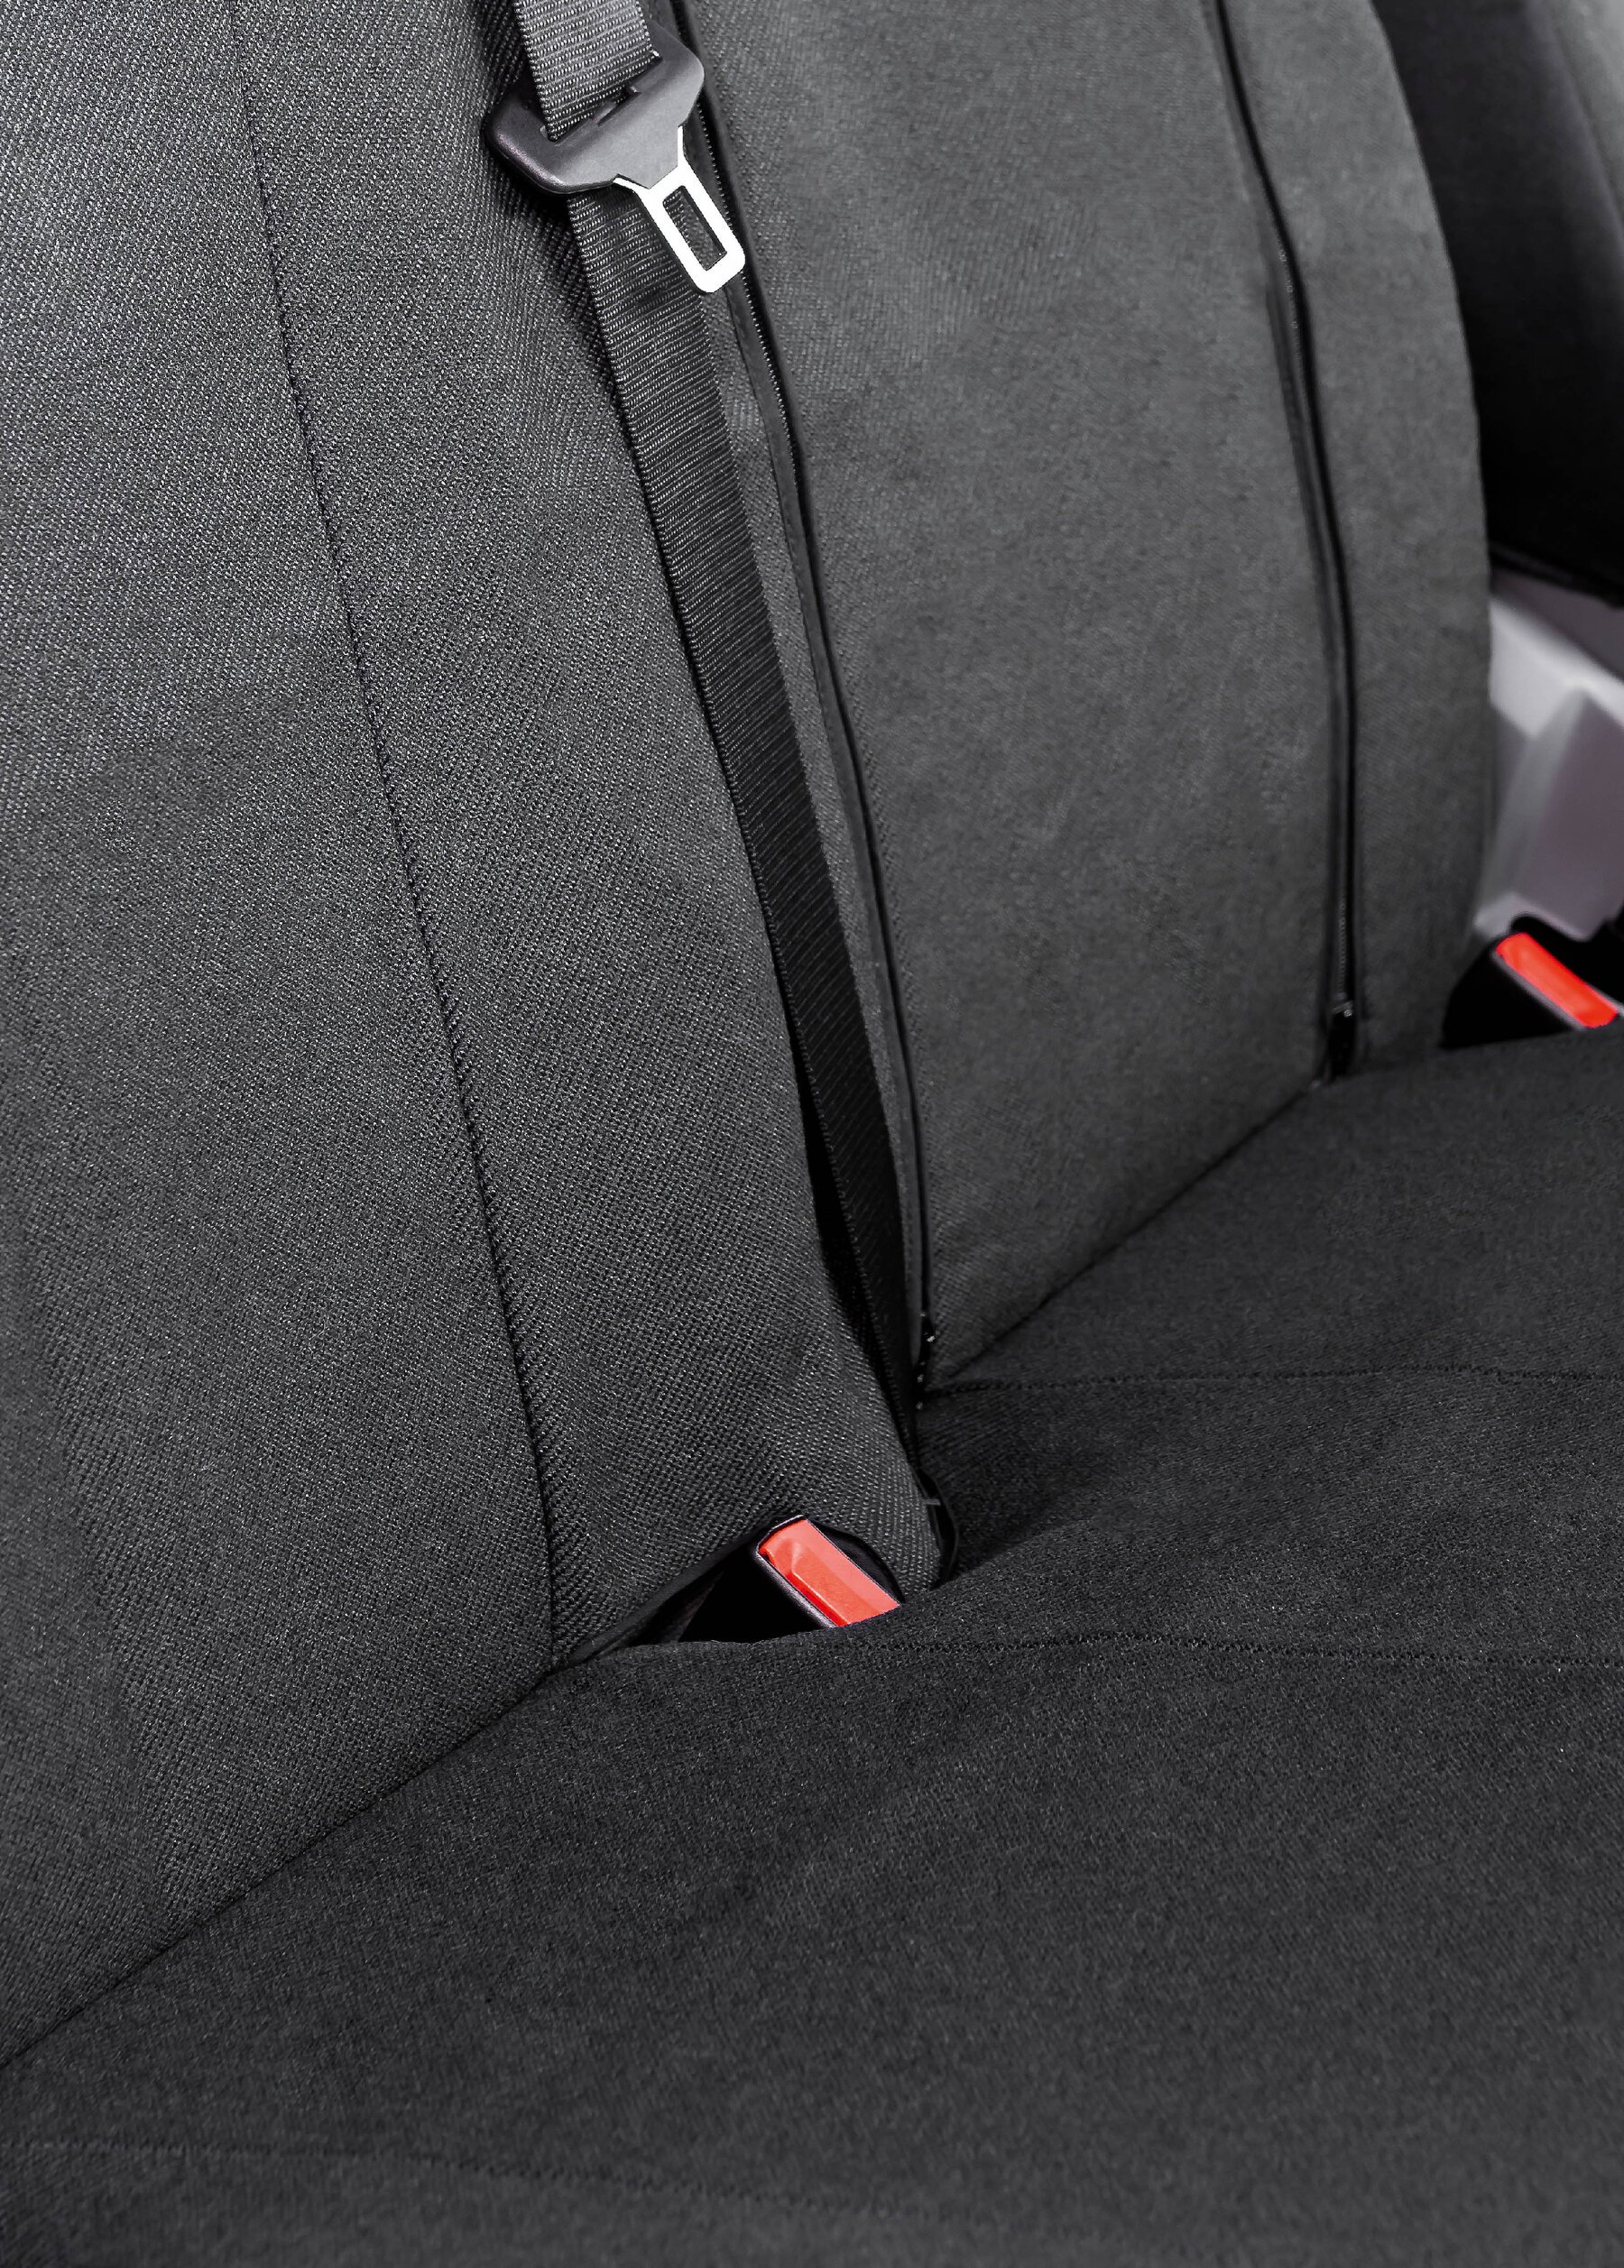 Passform Sitzbezug aus Stoff für VW Crafter, Mercedes Sprinter, Einzelsitzbezug vorne und Doppelbankbezug